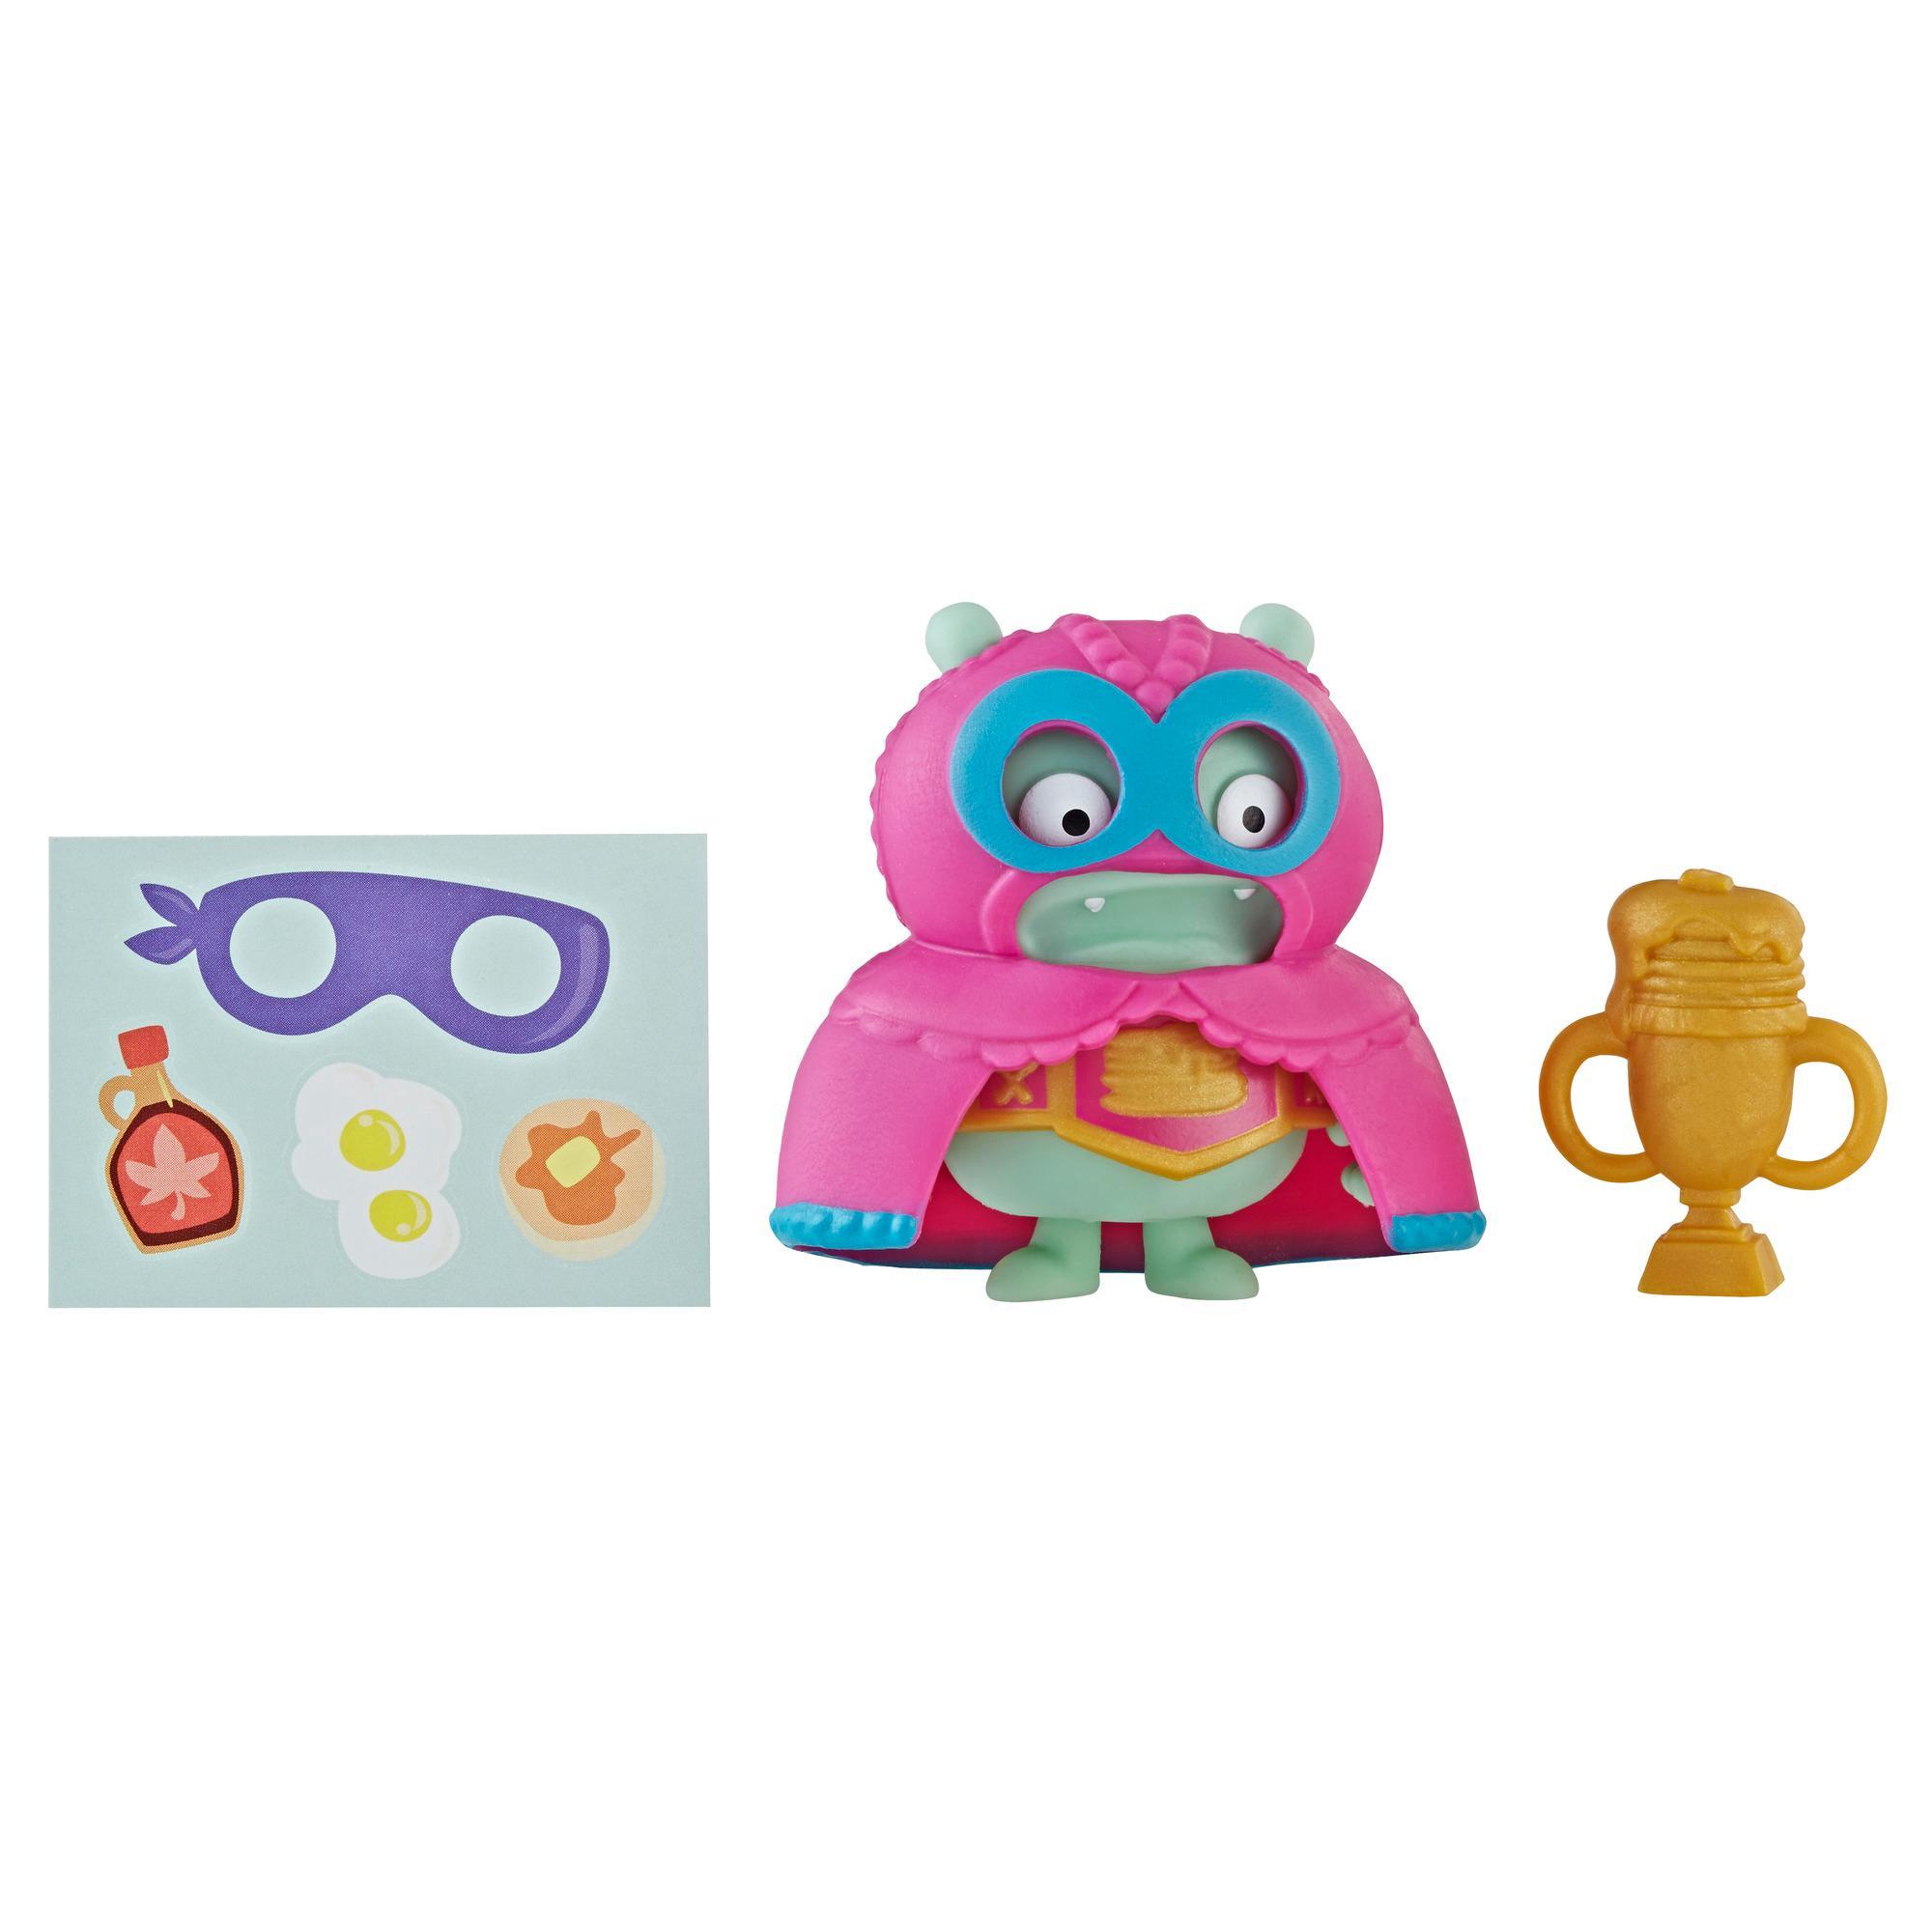 醜娃娃驚喜偽裝鬆餅冠軍基羅玩具、人偶和配件組 product thumbnail 1